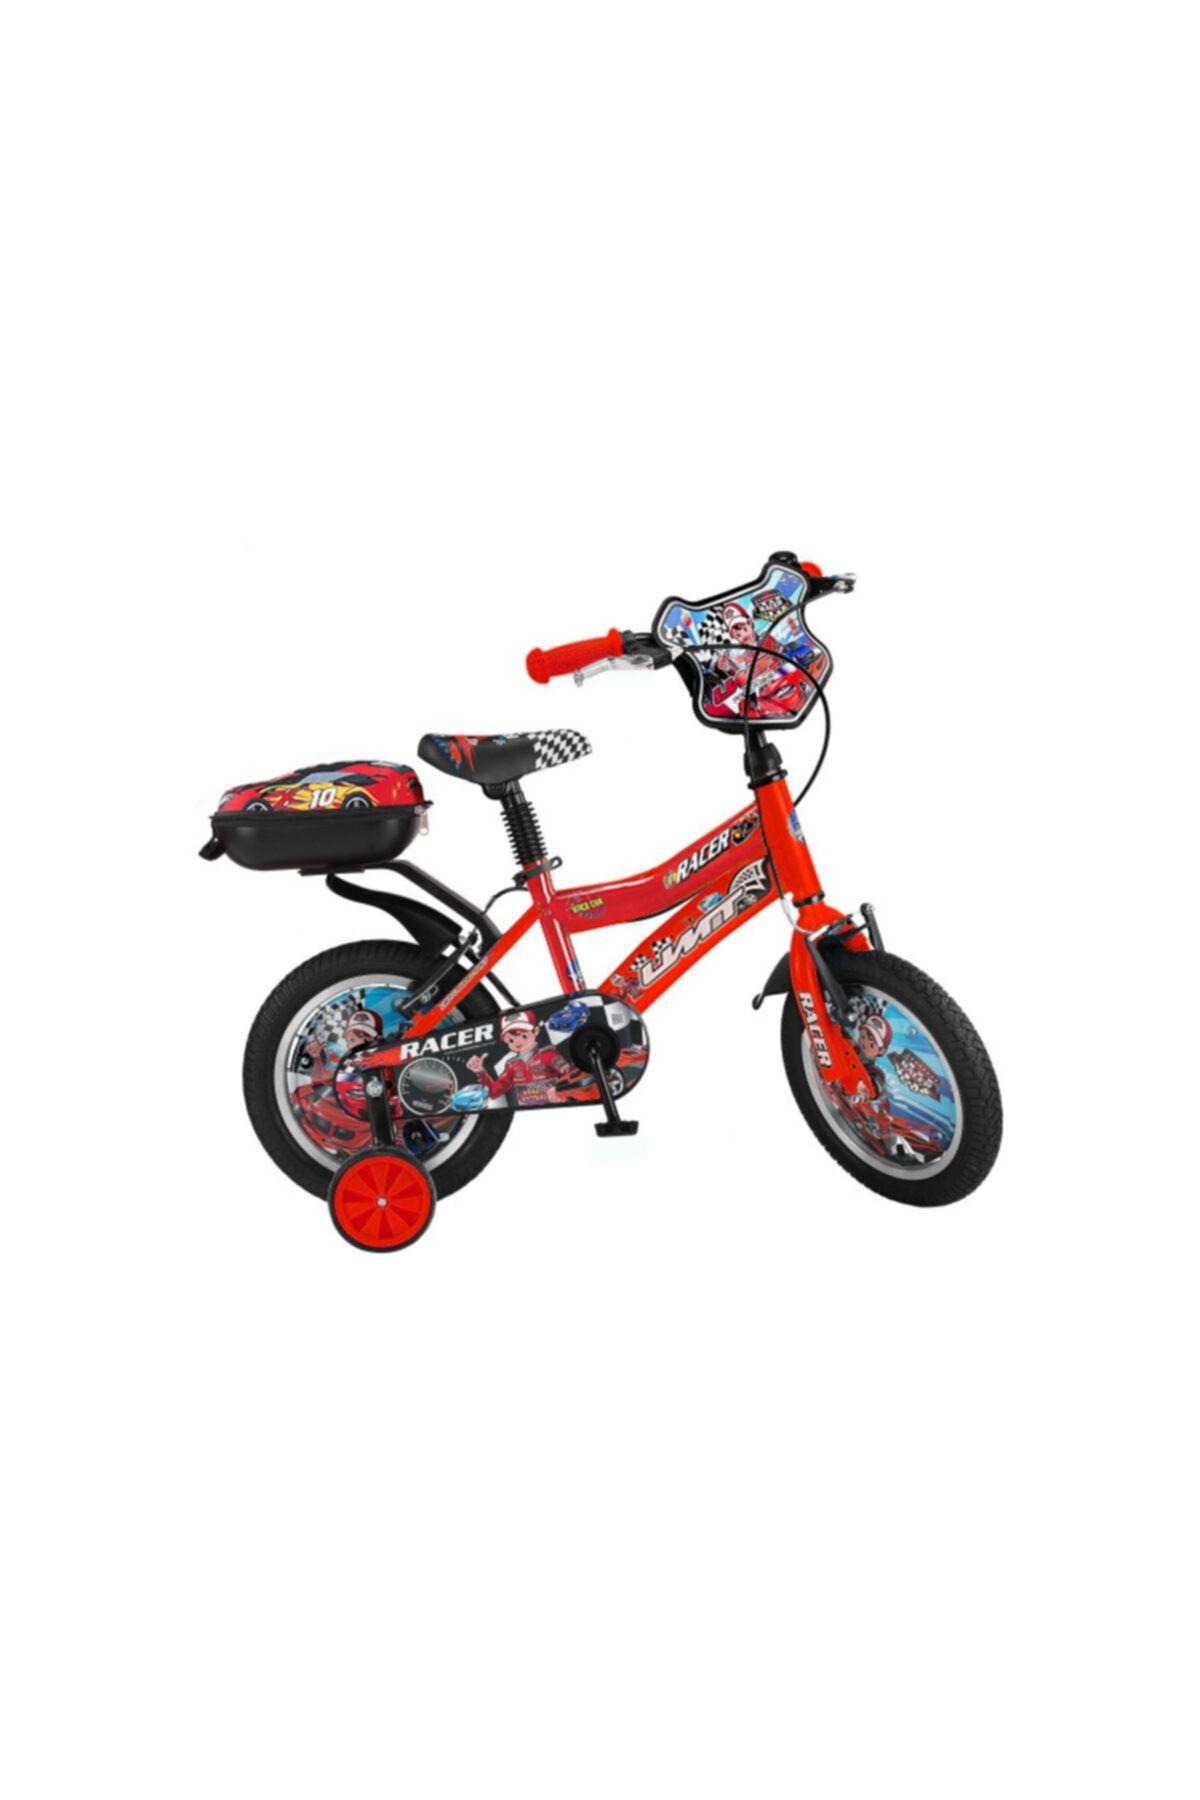 Ümit ÜMİT RACER 14 Jant Çocuk Bisikleti (80-100 cm Boy)